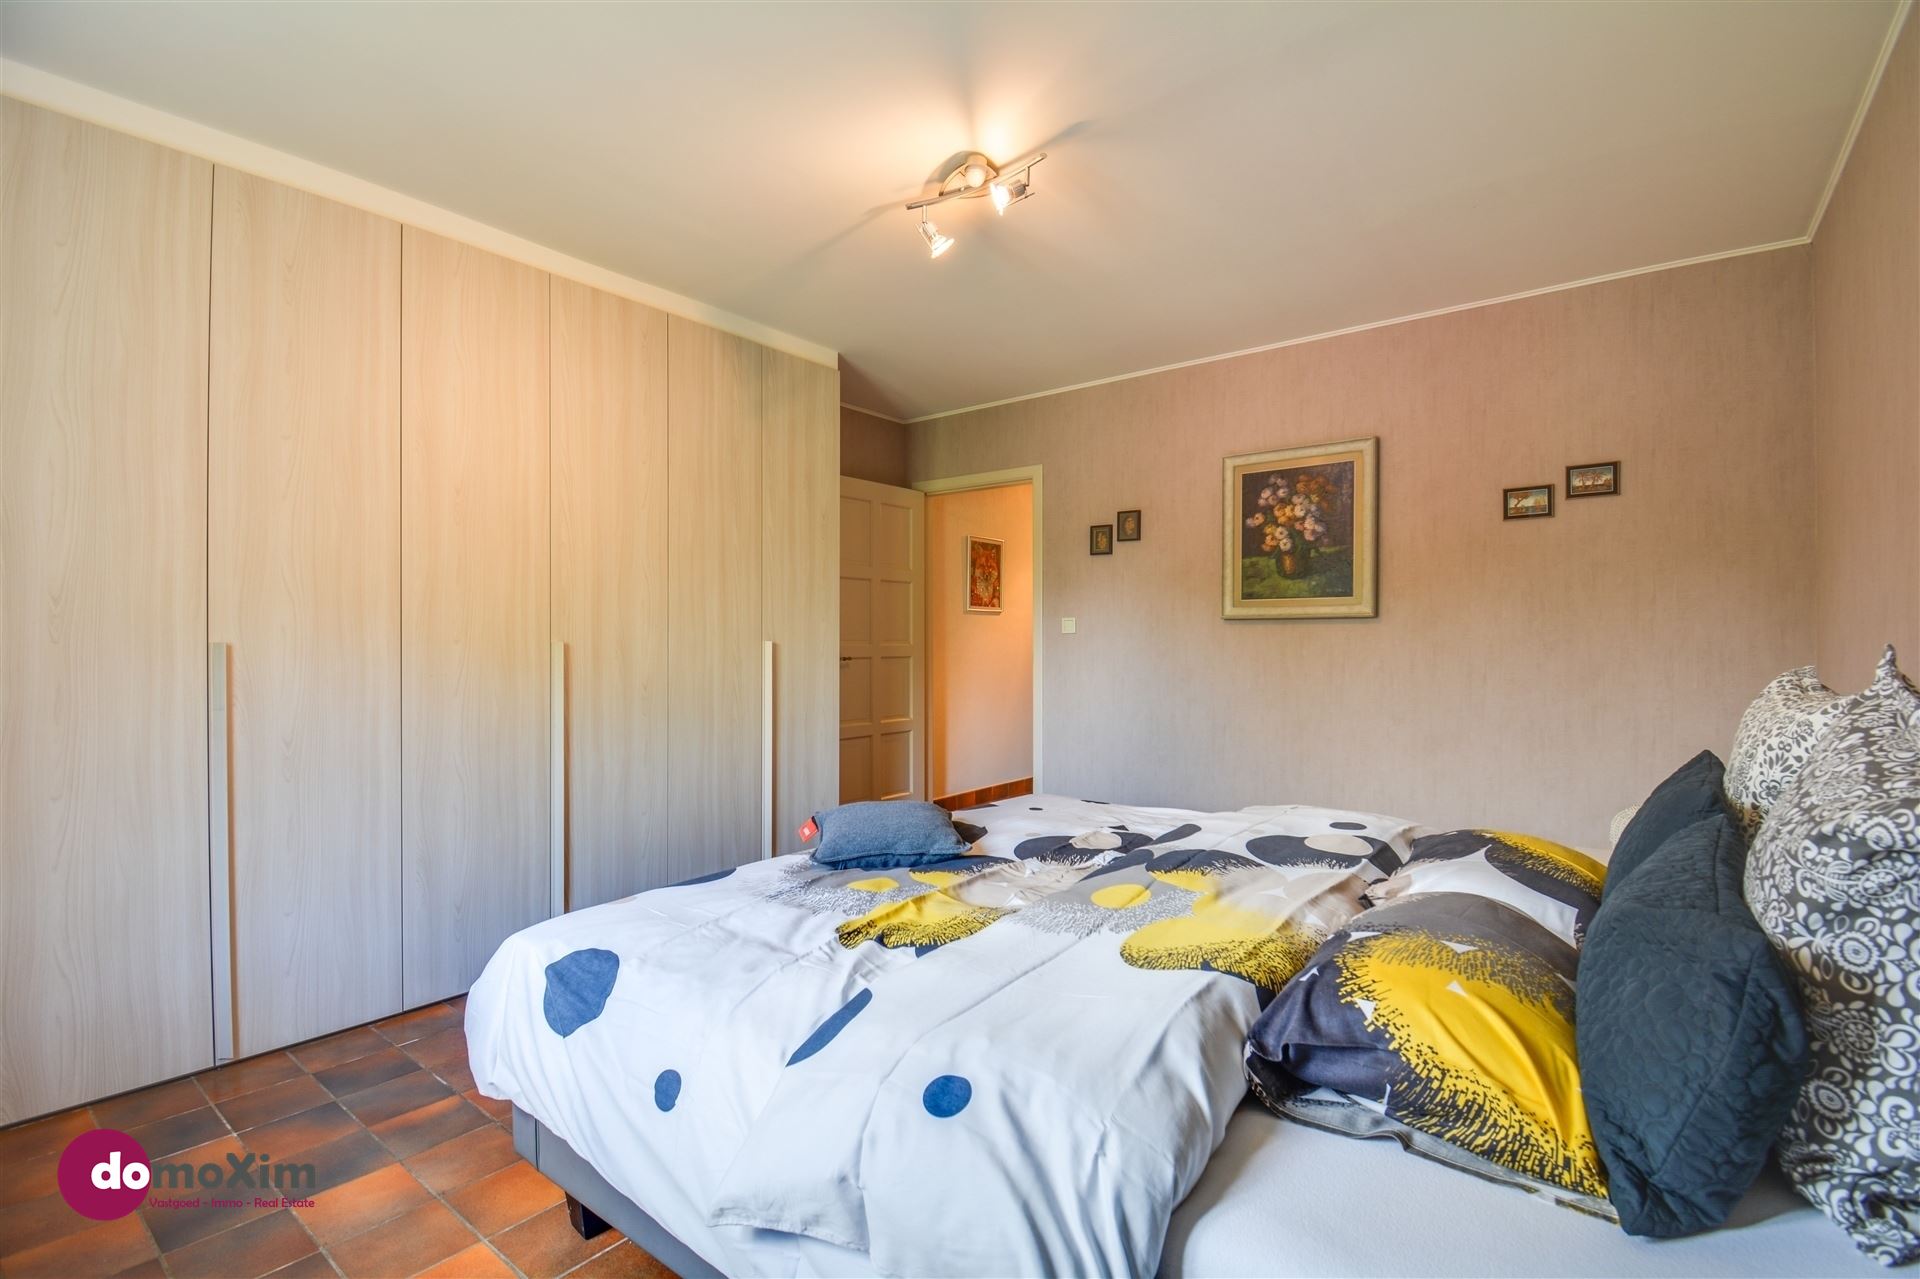 VERKOCHT BINNEN DE MAAND - Karaktervolle, gerenoveerde woning met 5 slaapkamers in Boortmeerbeek foto 13